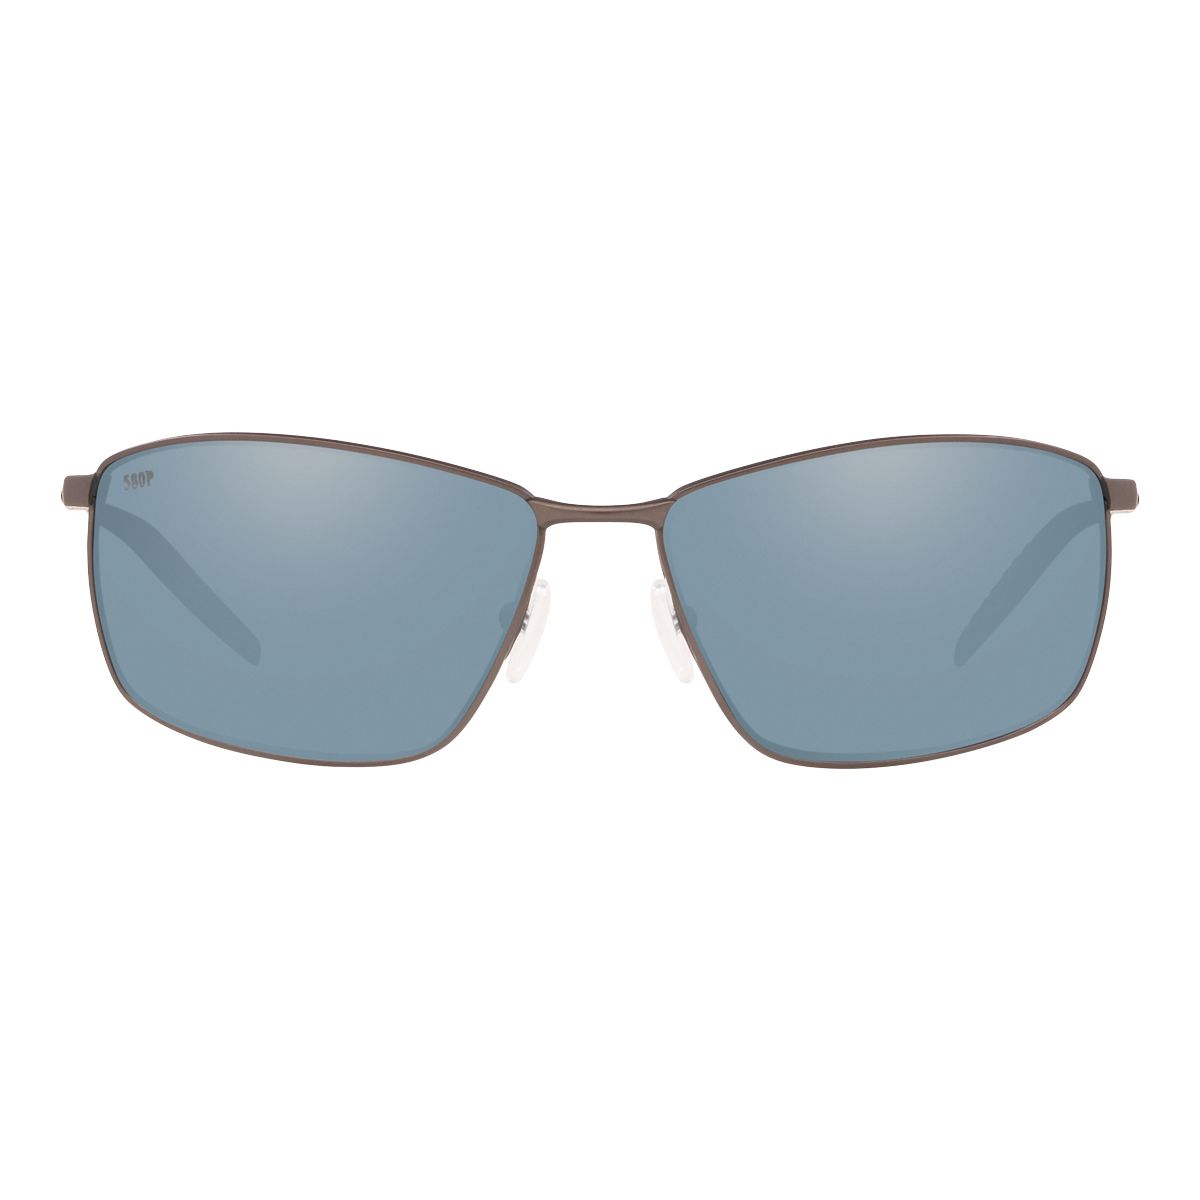 Costa Del Mar Turret 6009 Sunglasses 600909 - 247 Matte Dark Gunmetal - Gray Silver Mirror 580p Men